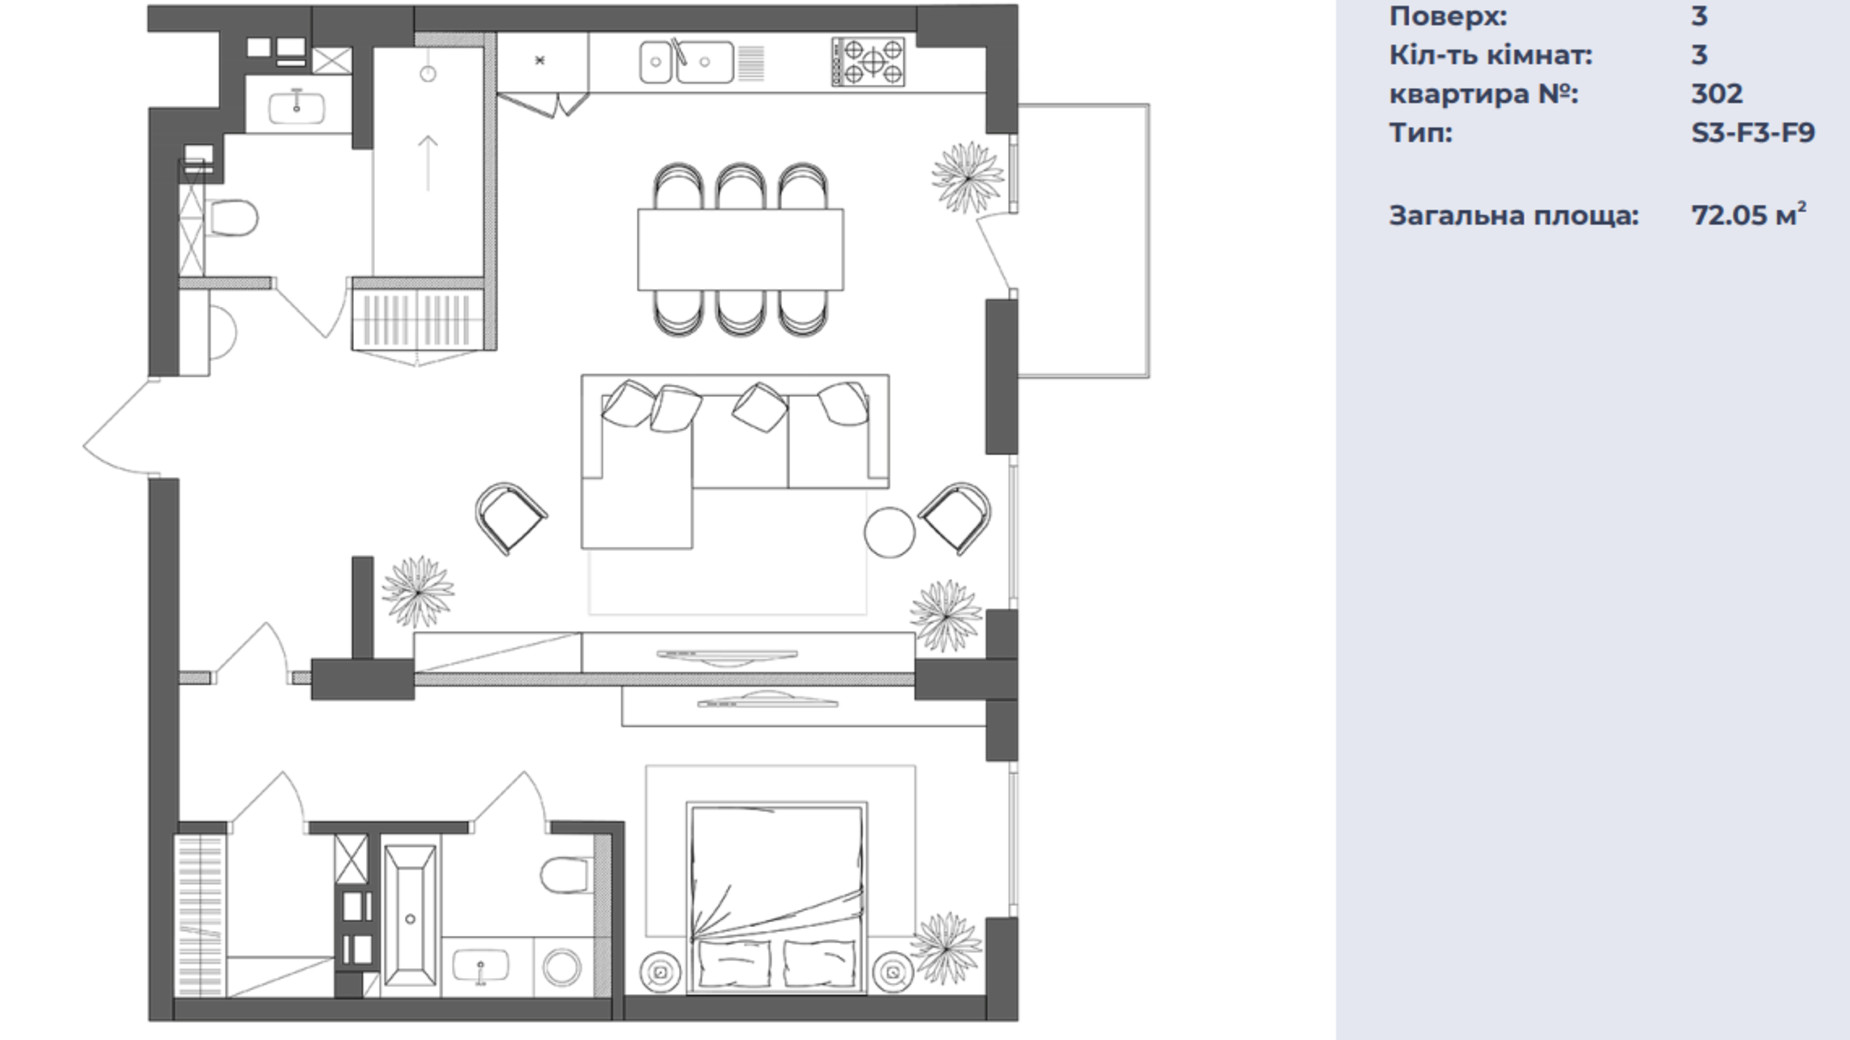 Планировка 3-комнатной квартиры в ЖК Neboshill 72.05 м², фото 630186